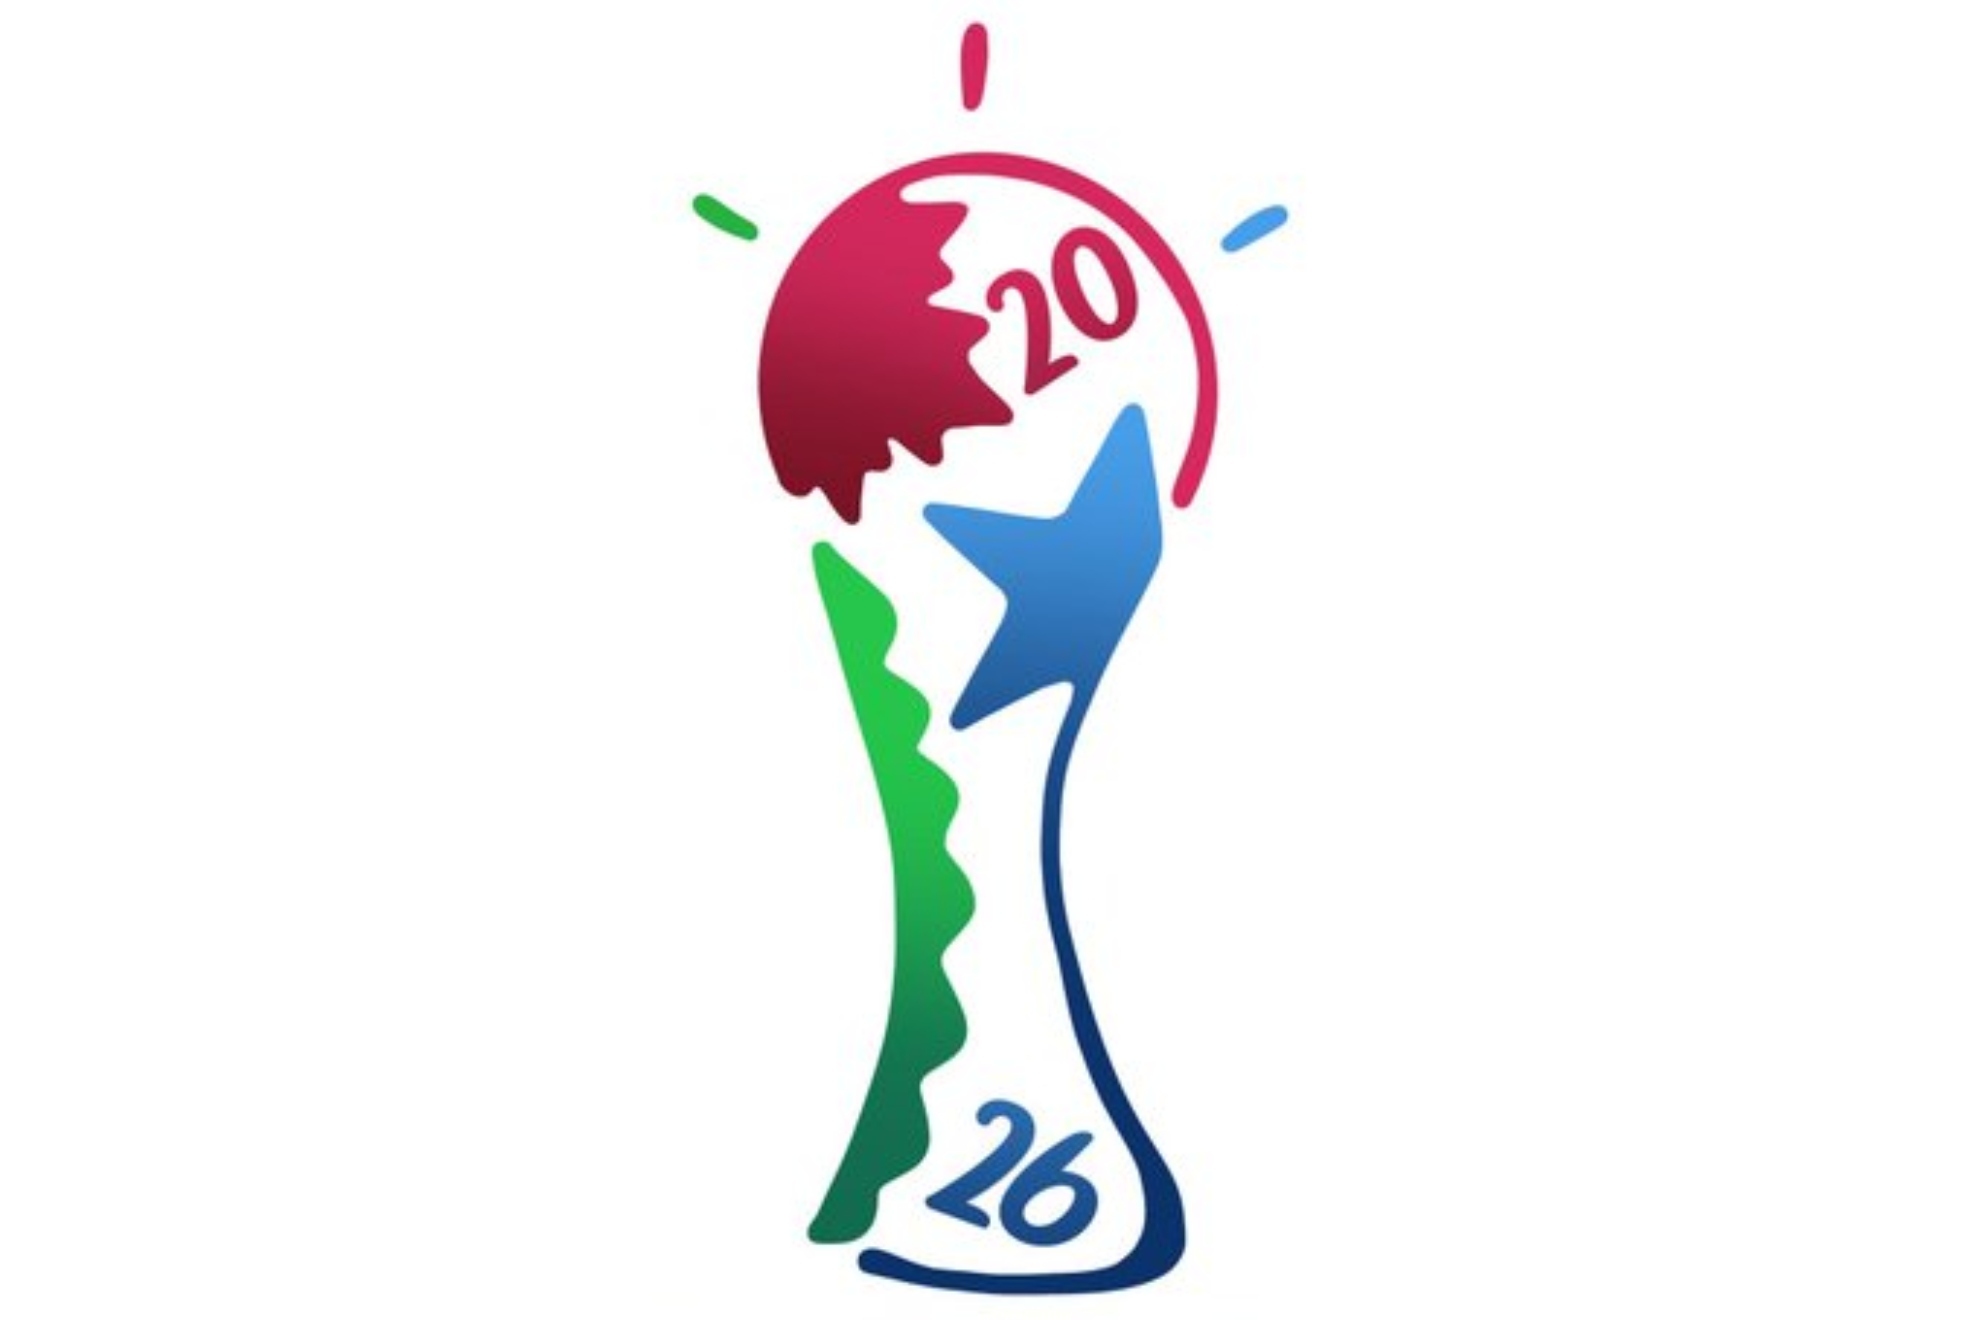 Jahon chempionati 2026. WC 2026 FIFA.